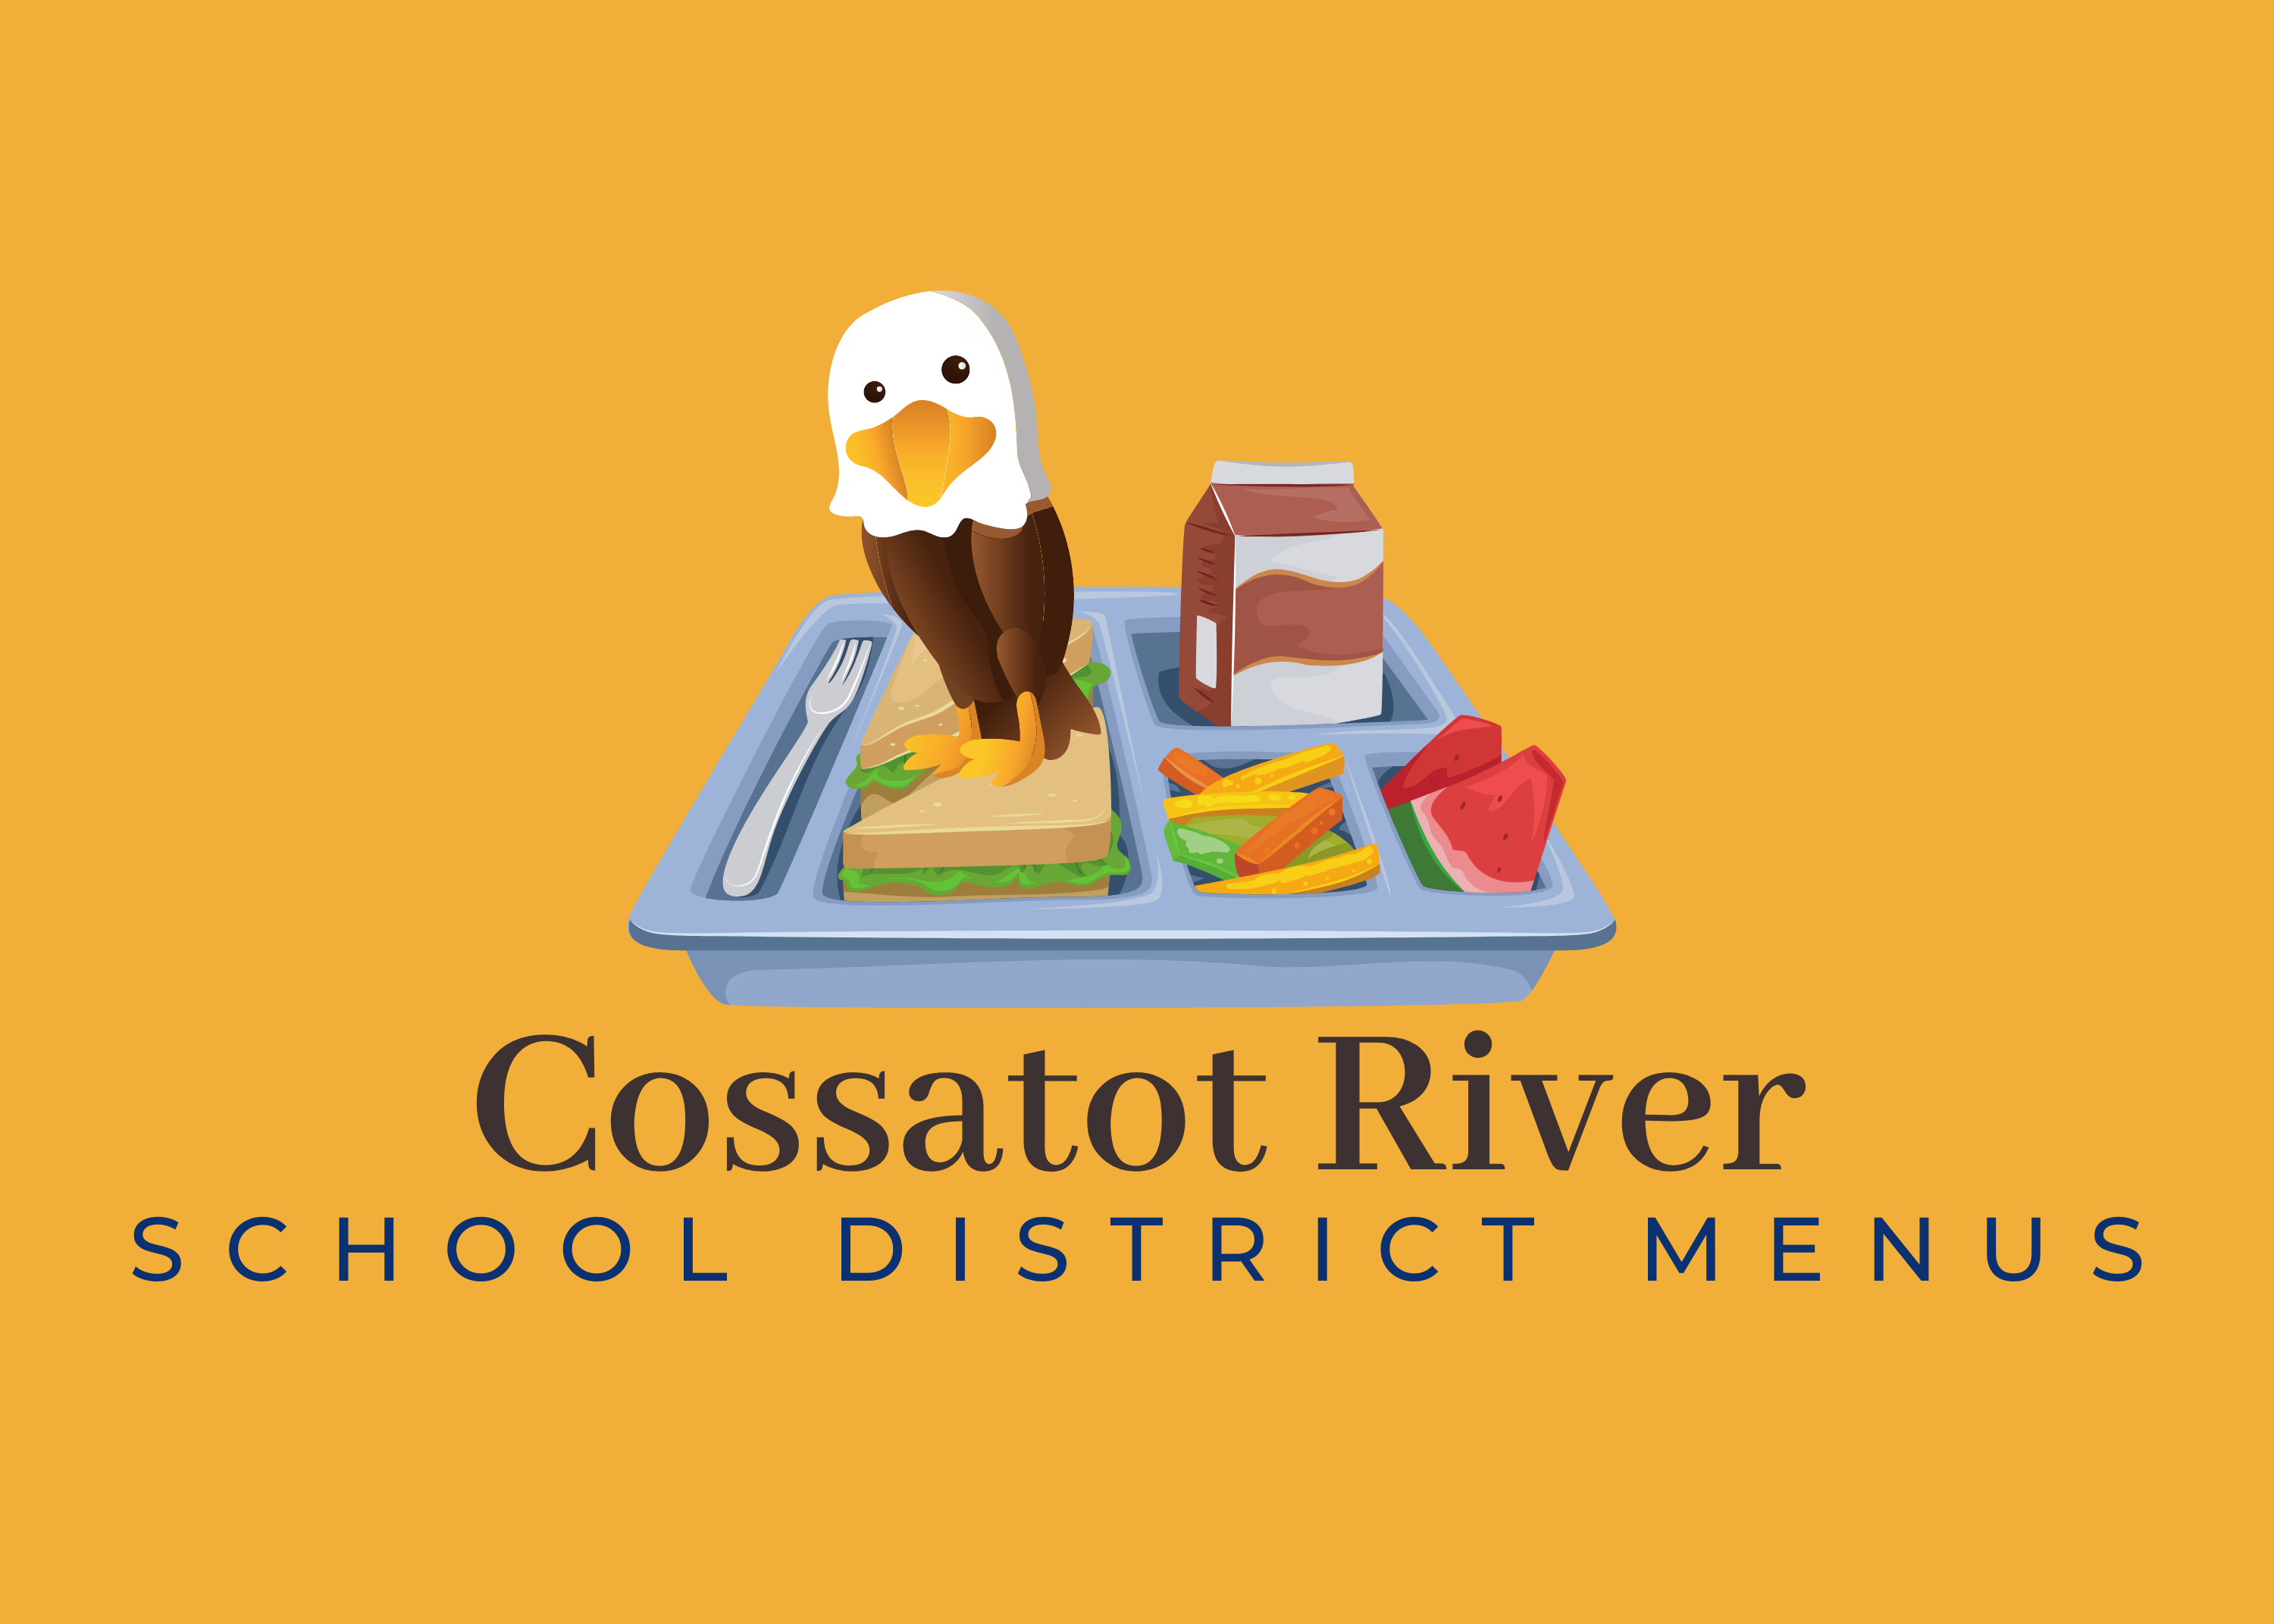 Cossatot River school district menus graphic